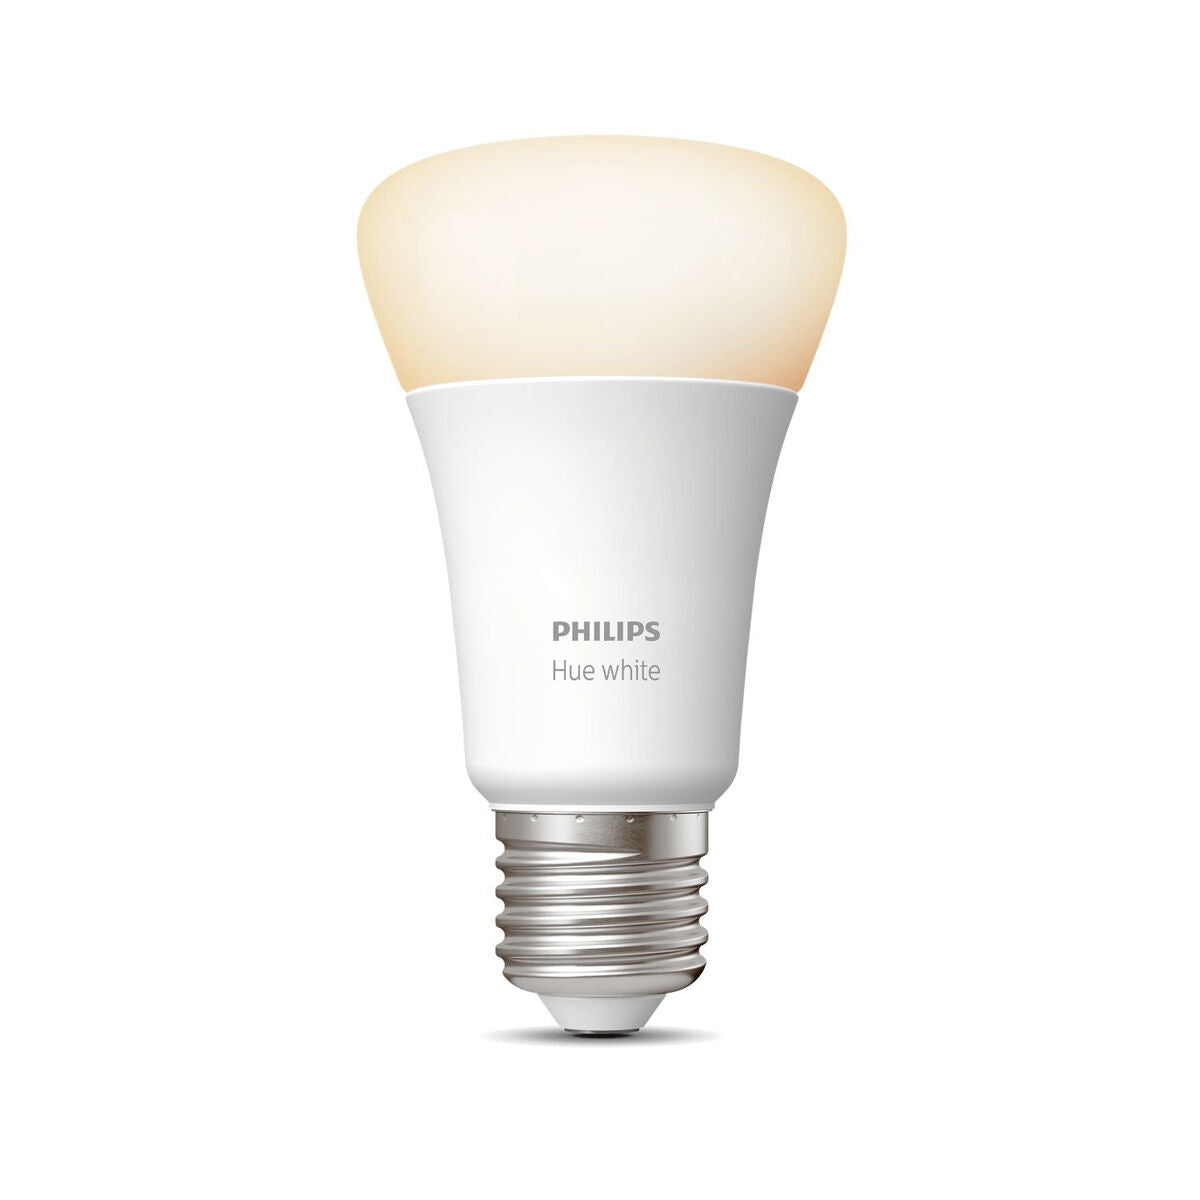 Lampadina Intelligente Philips Bianco A+ F A++ 9 W E27 806 lm (2700 K) (1 Unità) (Ricondizionati A)